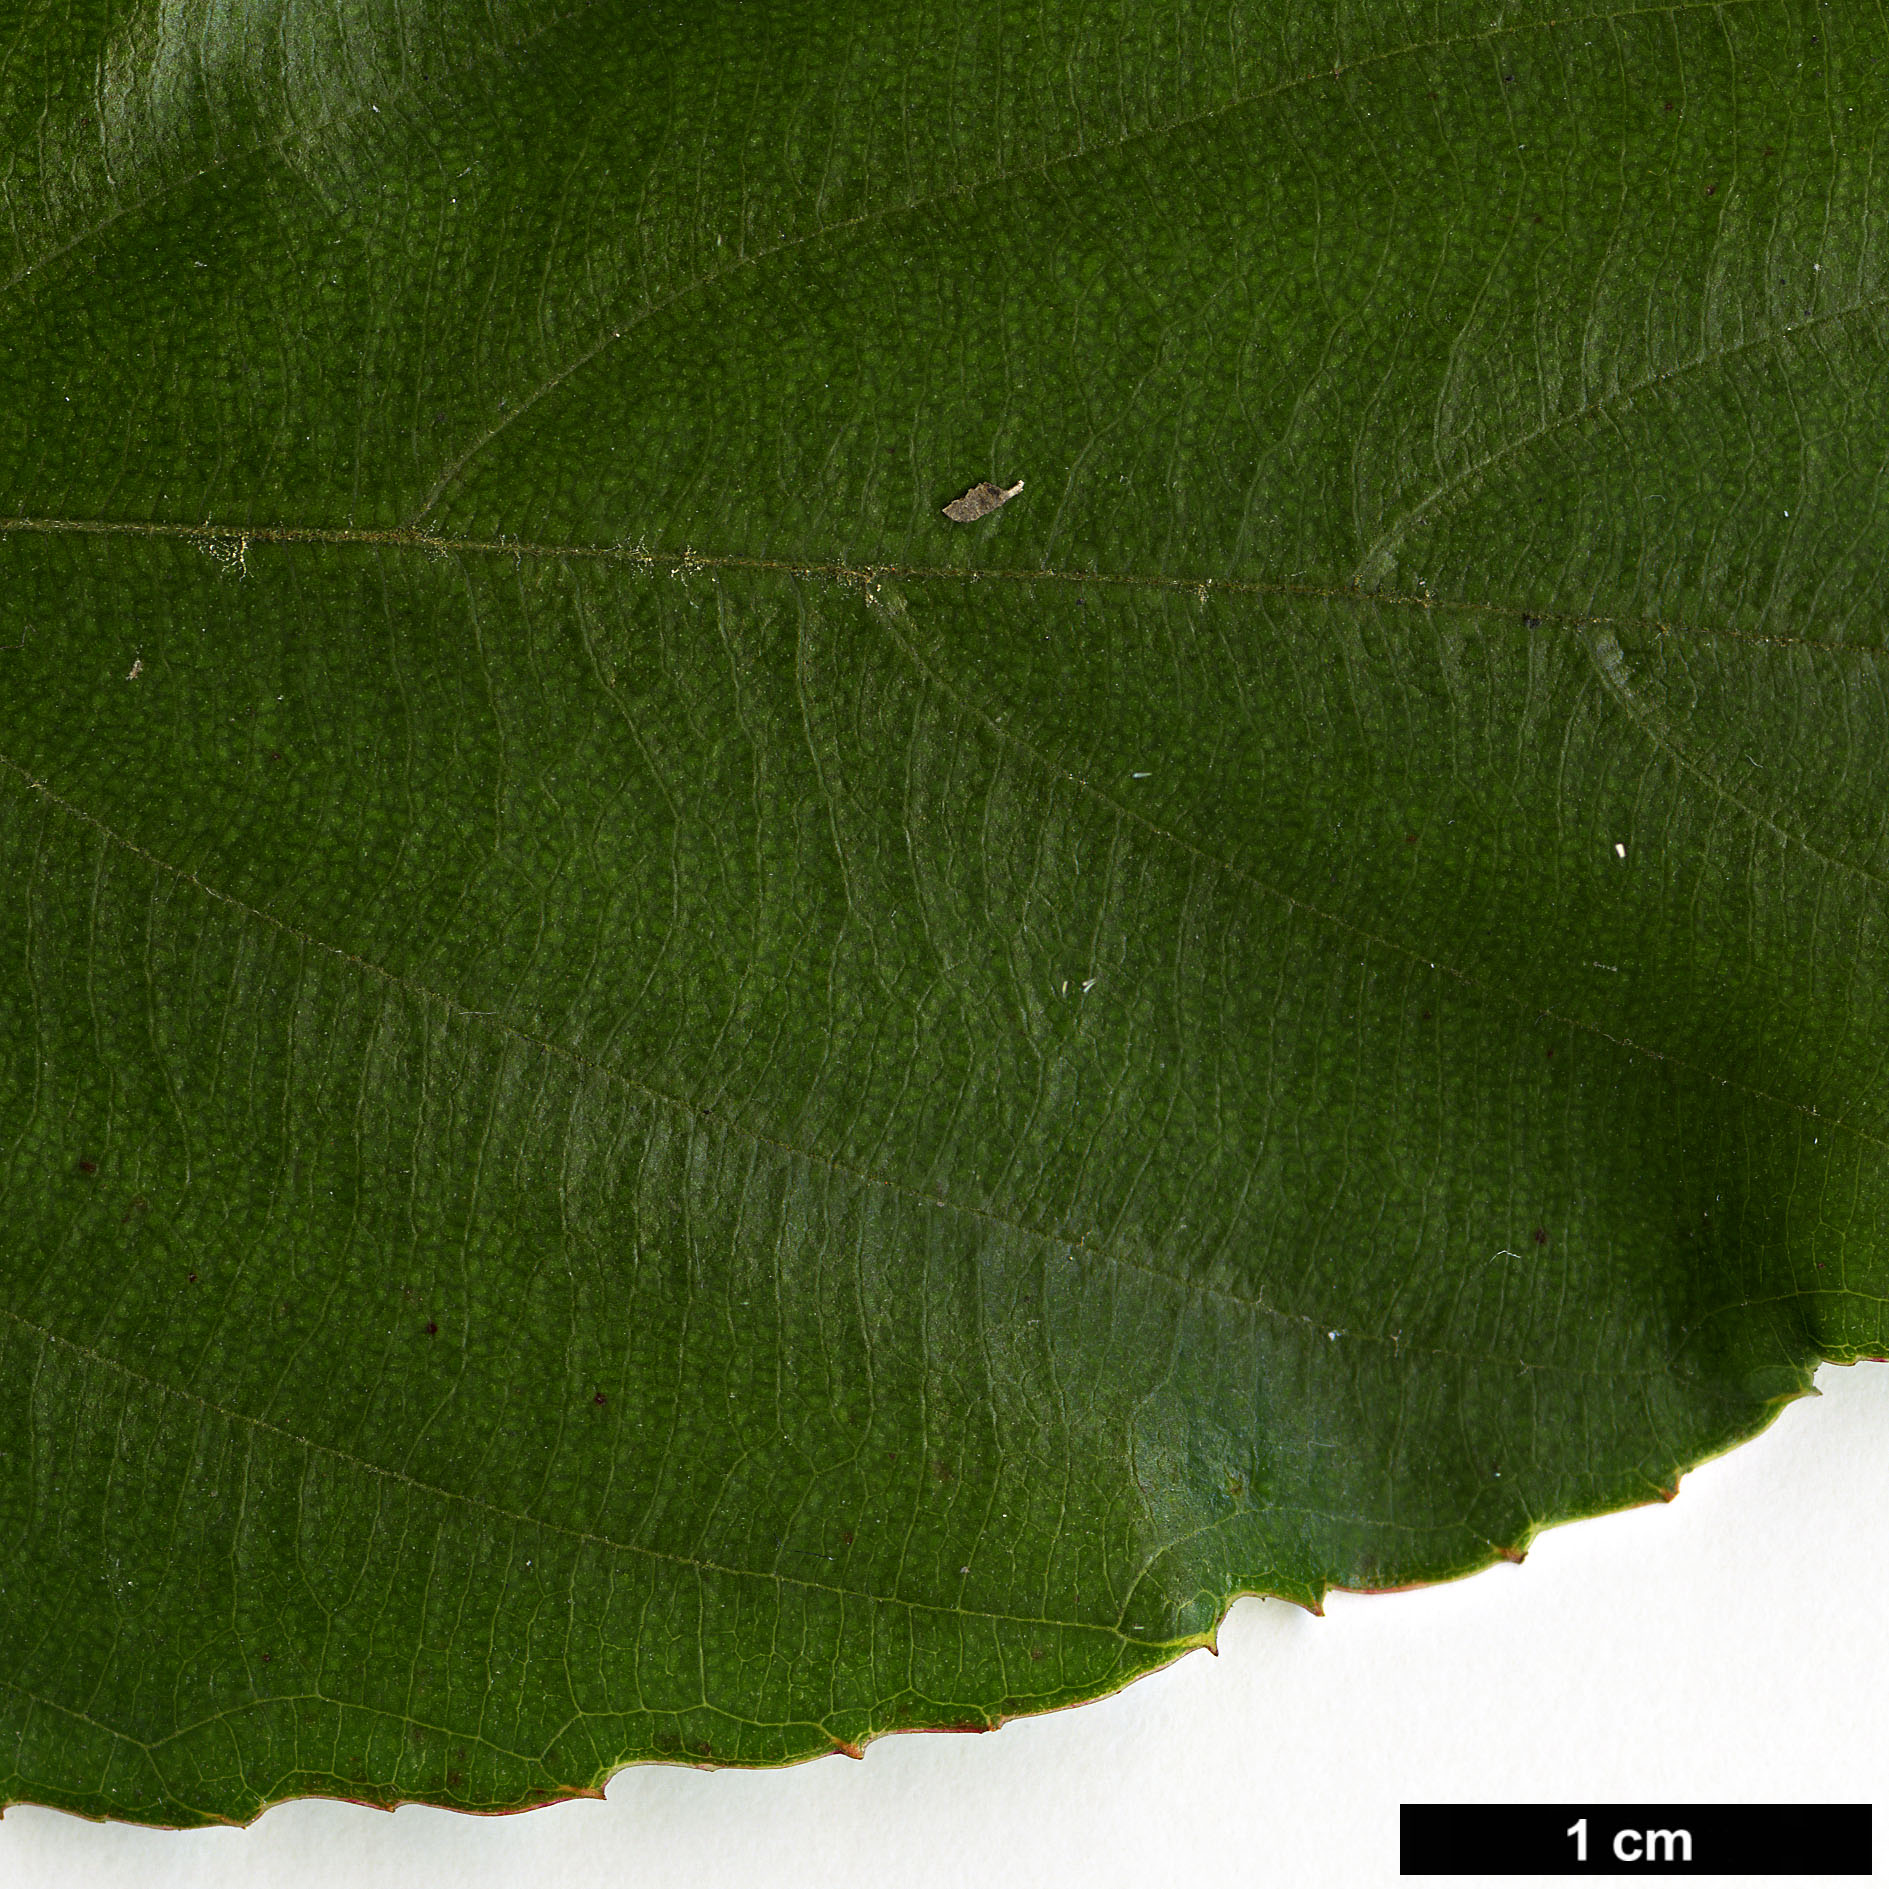 High resolution image: Family: Rosaceae - Genus: Rubus - Taxon: acuminatus